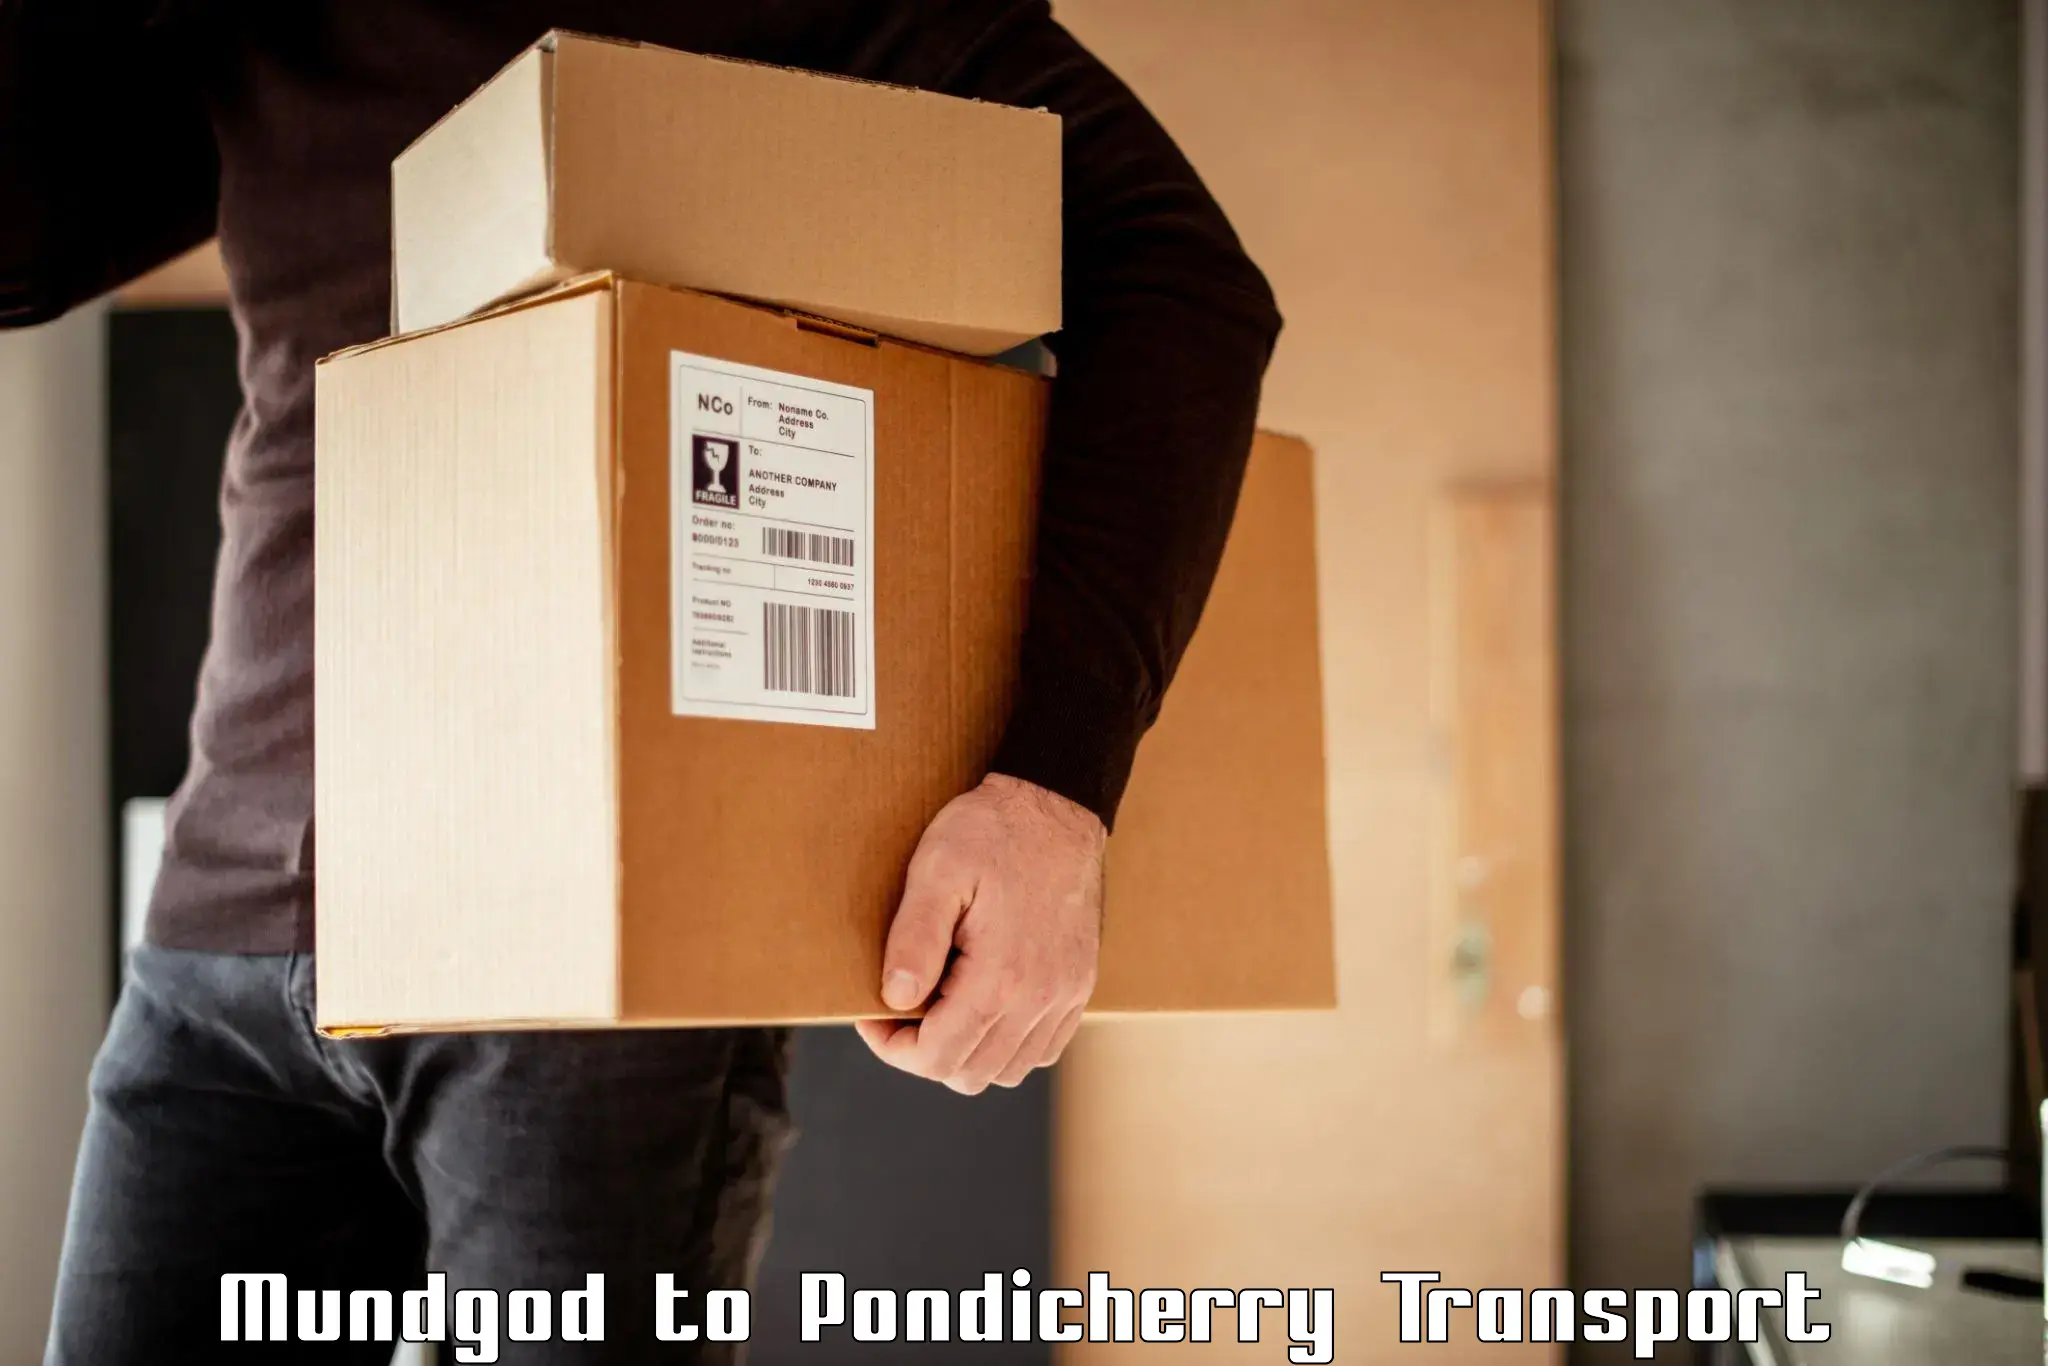 Delivery service Mundgod to Pondicherry